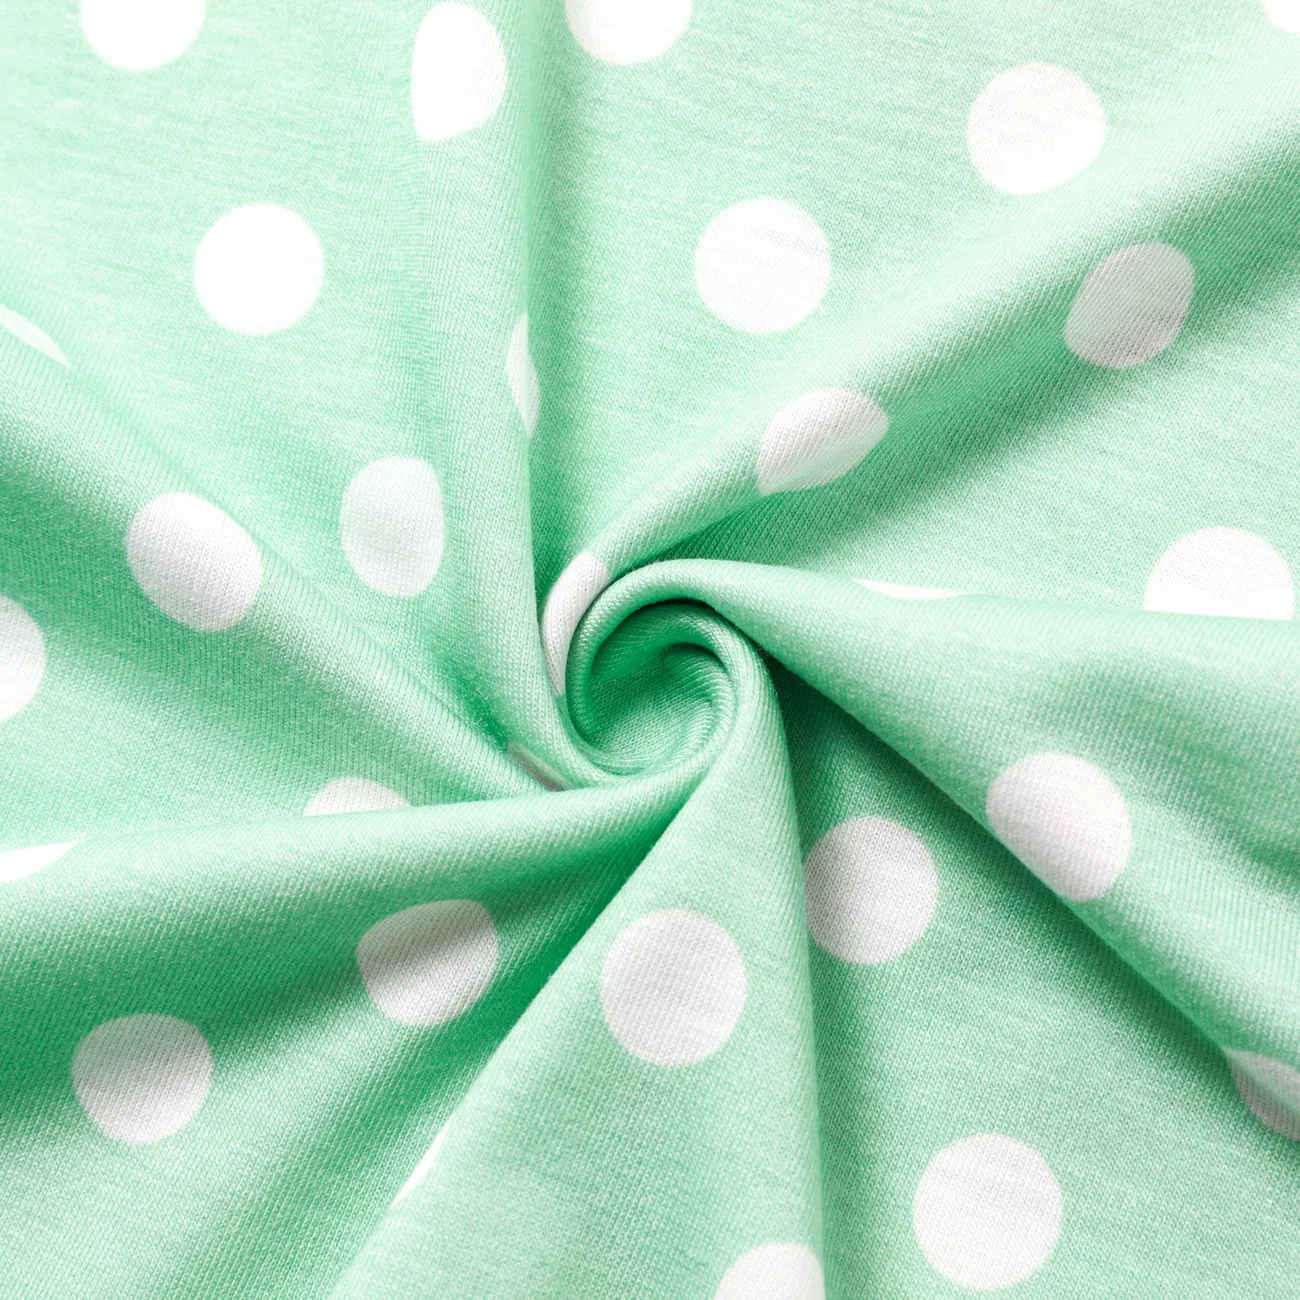 Disney Princess Baby Girl Naia™ Character & Polka Dots Print Long-sleeve Jumpsuit  Green big image 1